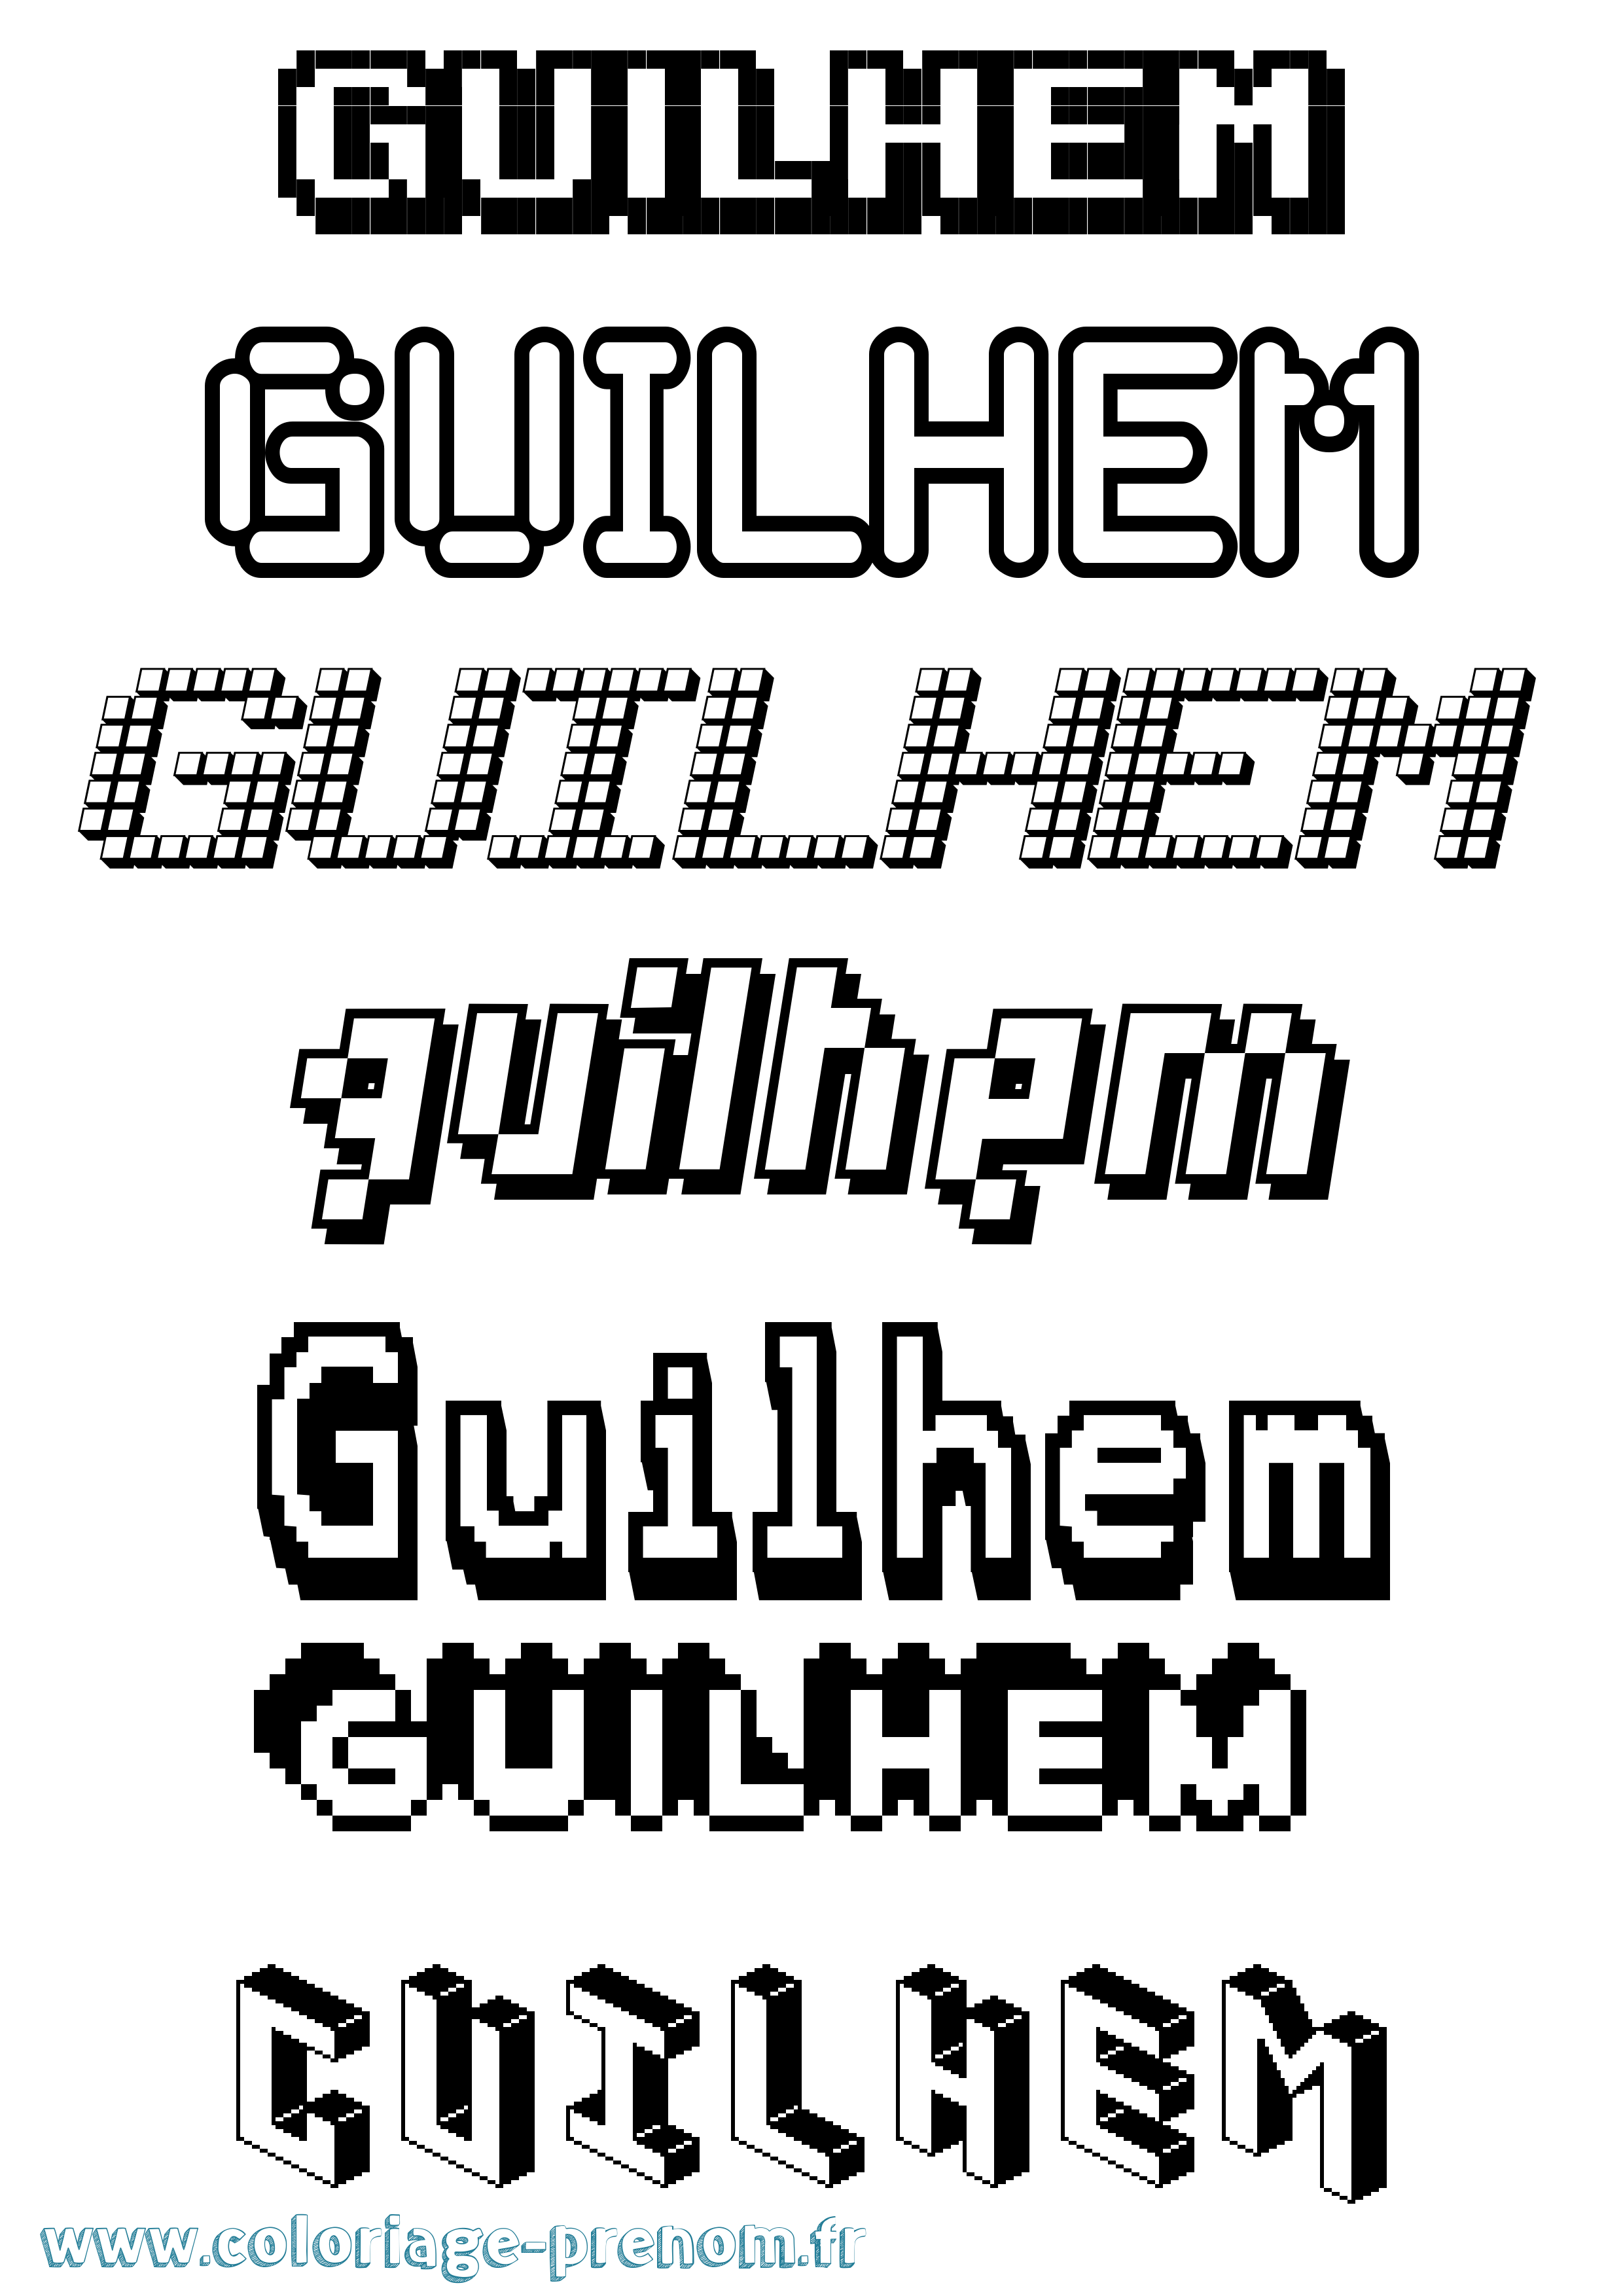 Coloriage prénom Guilhem Pixel